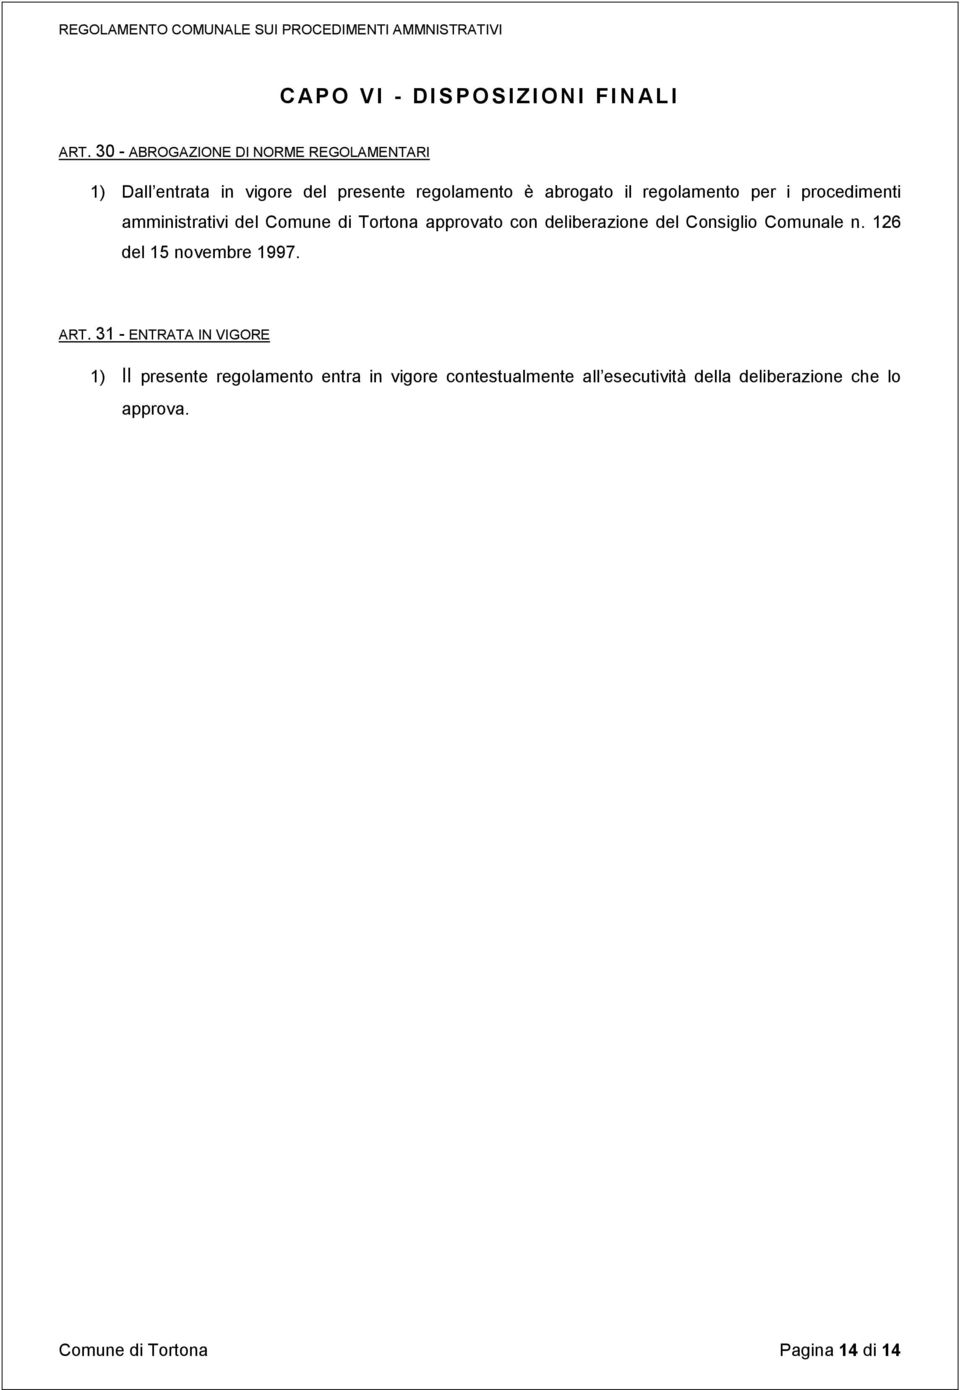 regolamento per i procedimenti amministrativi del Comune di Tortona approvato con deliberazione del Consiglio